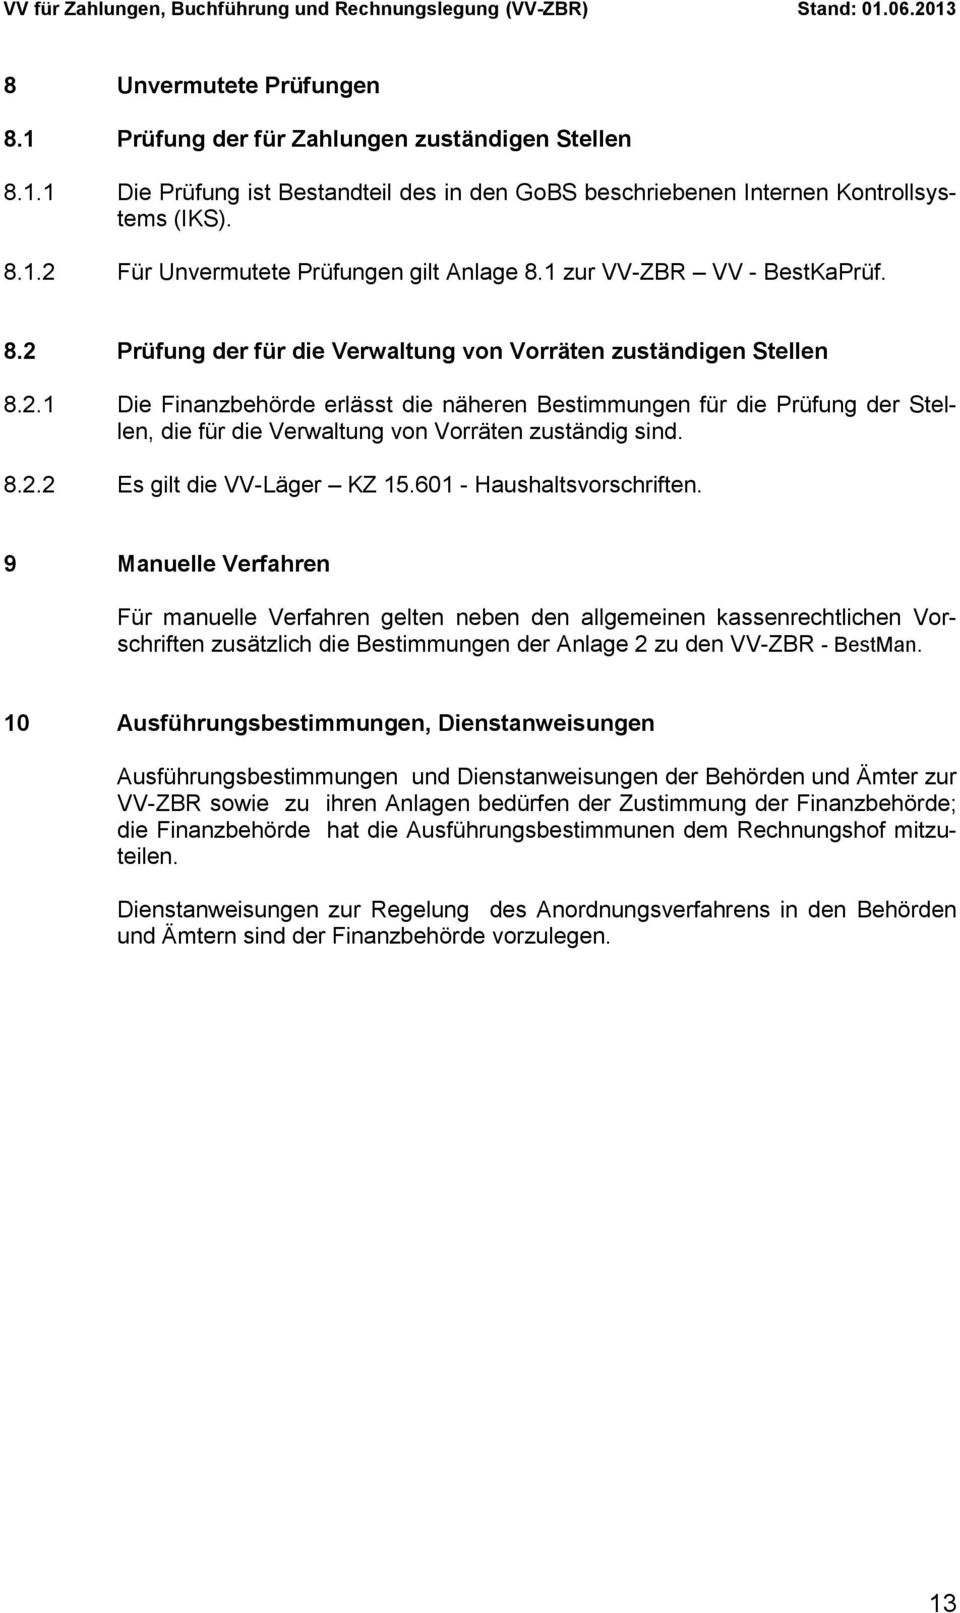 8.2.2 Es gilt die VV-Läger KZ 15.601 - Haushaltsvorschriften.